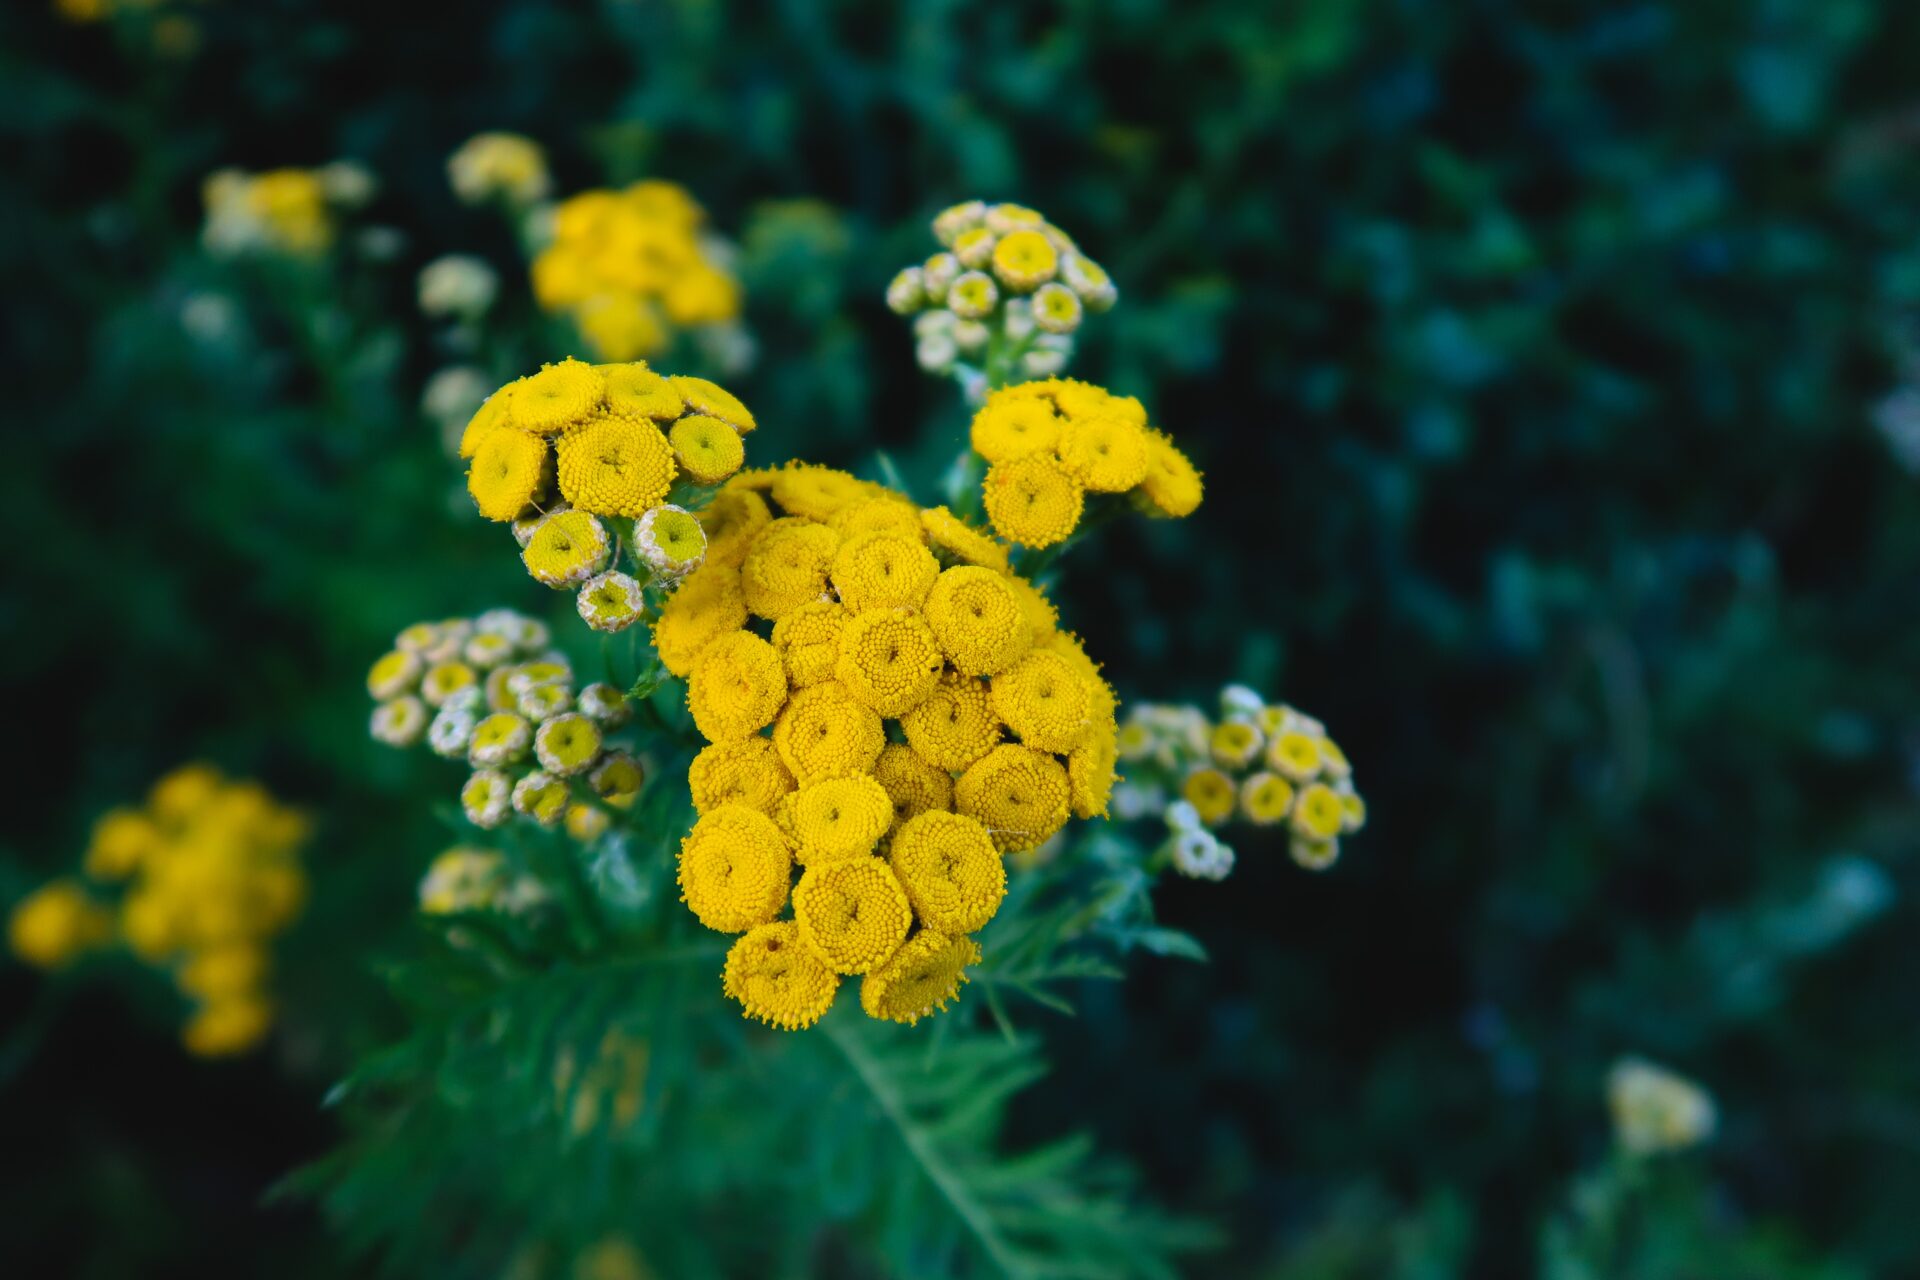 Wrotycz pospolity. Roślina z żółtymi kwiatami.